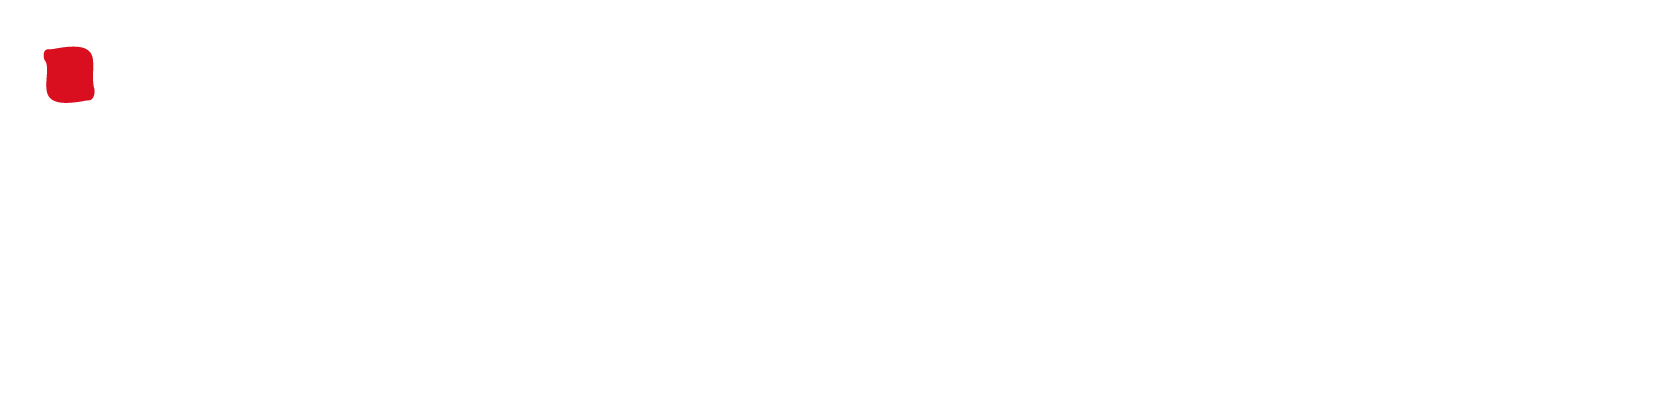 Colegio Alberto Pérez